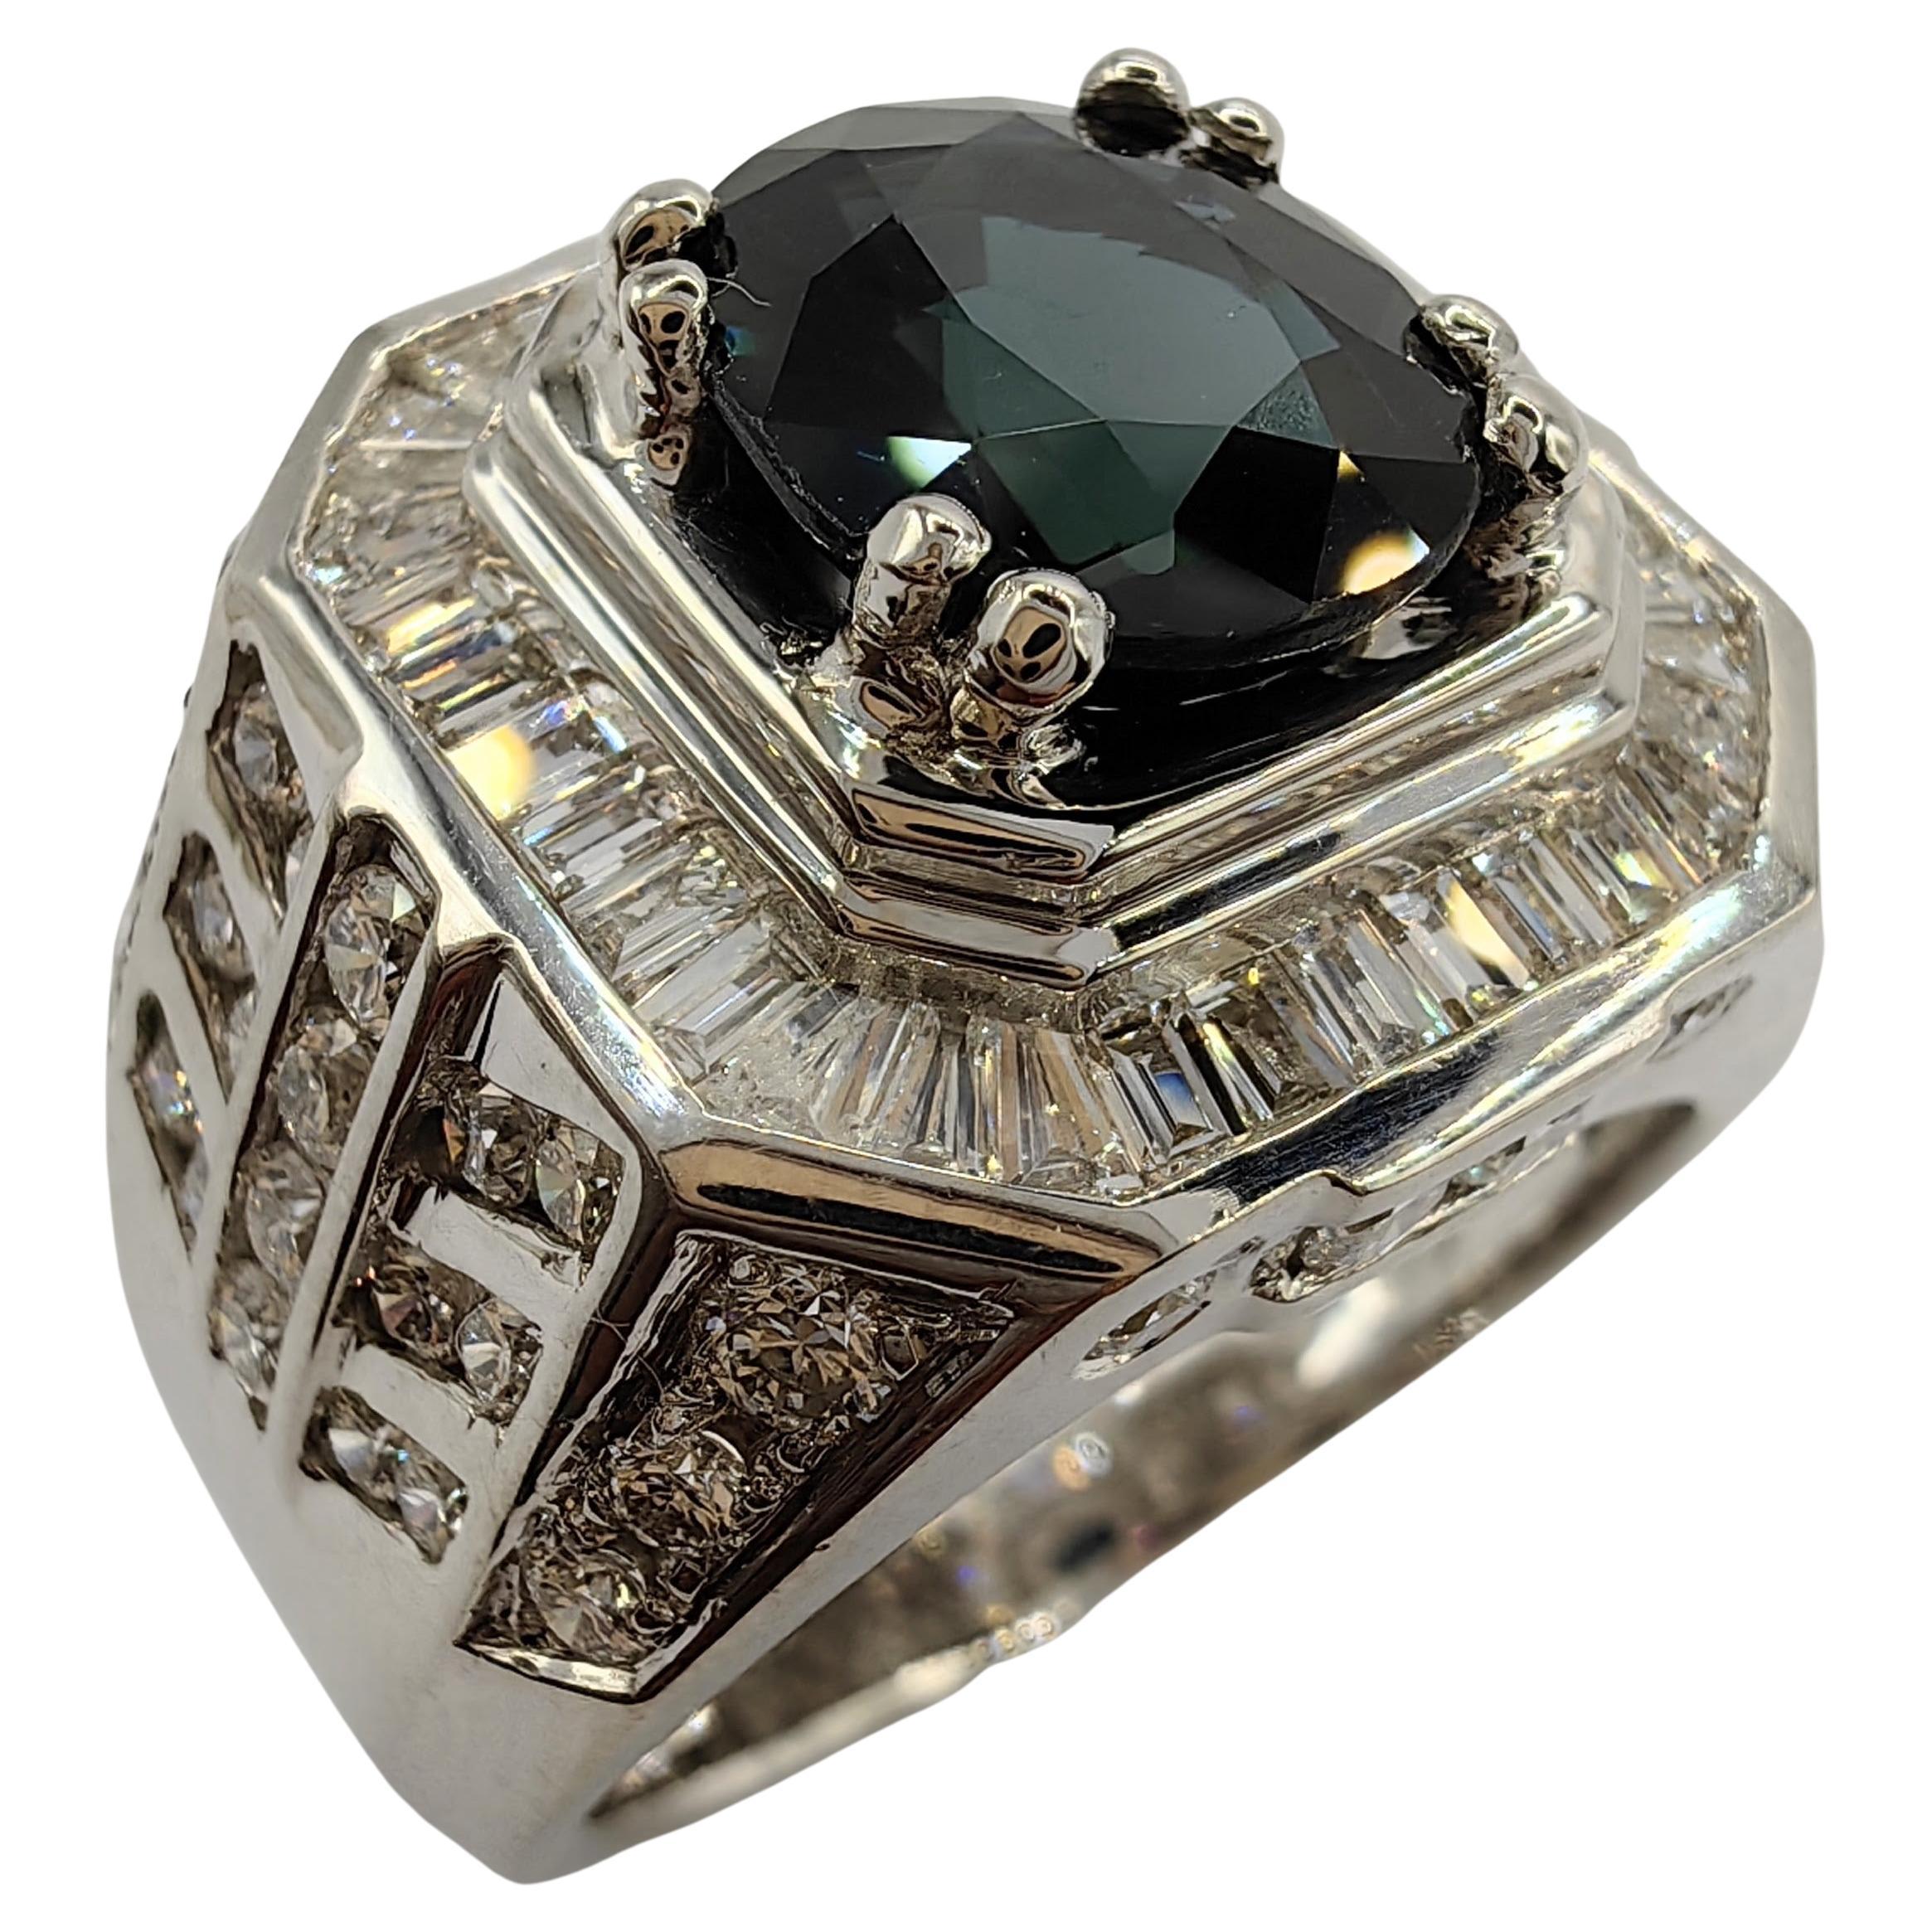 2.27 Carat Sapphire Diamond Art Deco Men's Ring in 18k White Gold